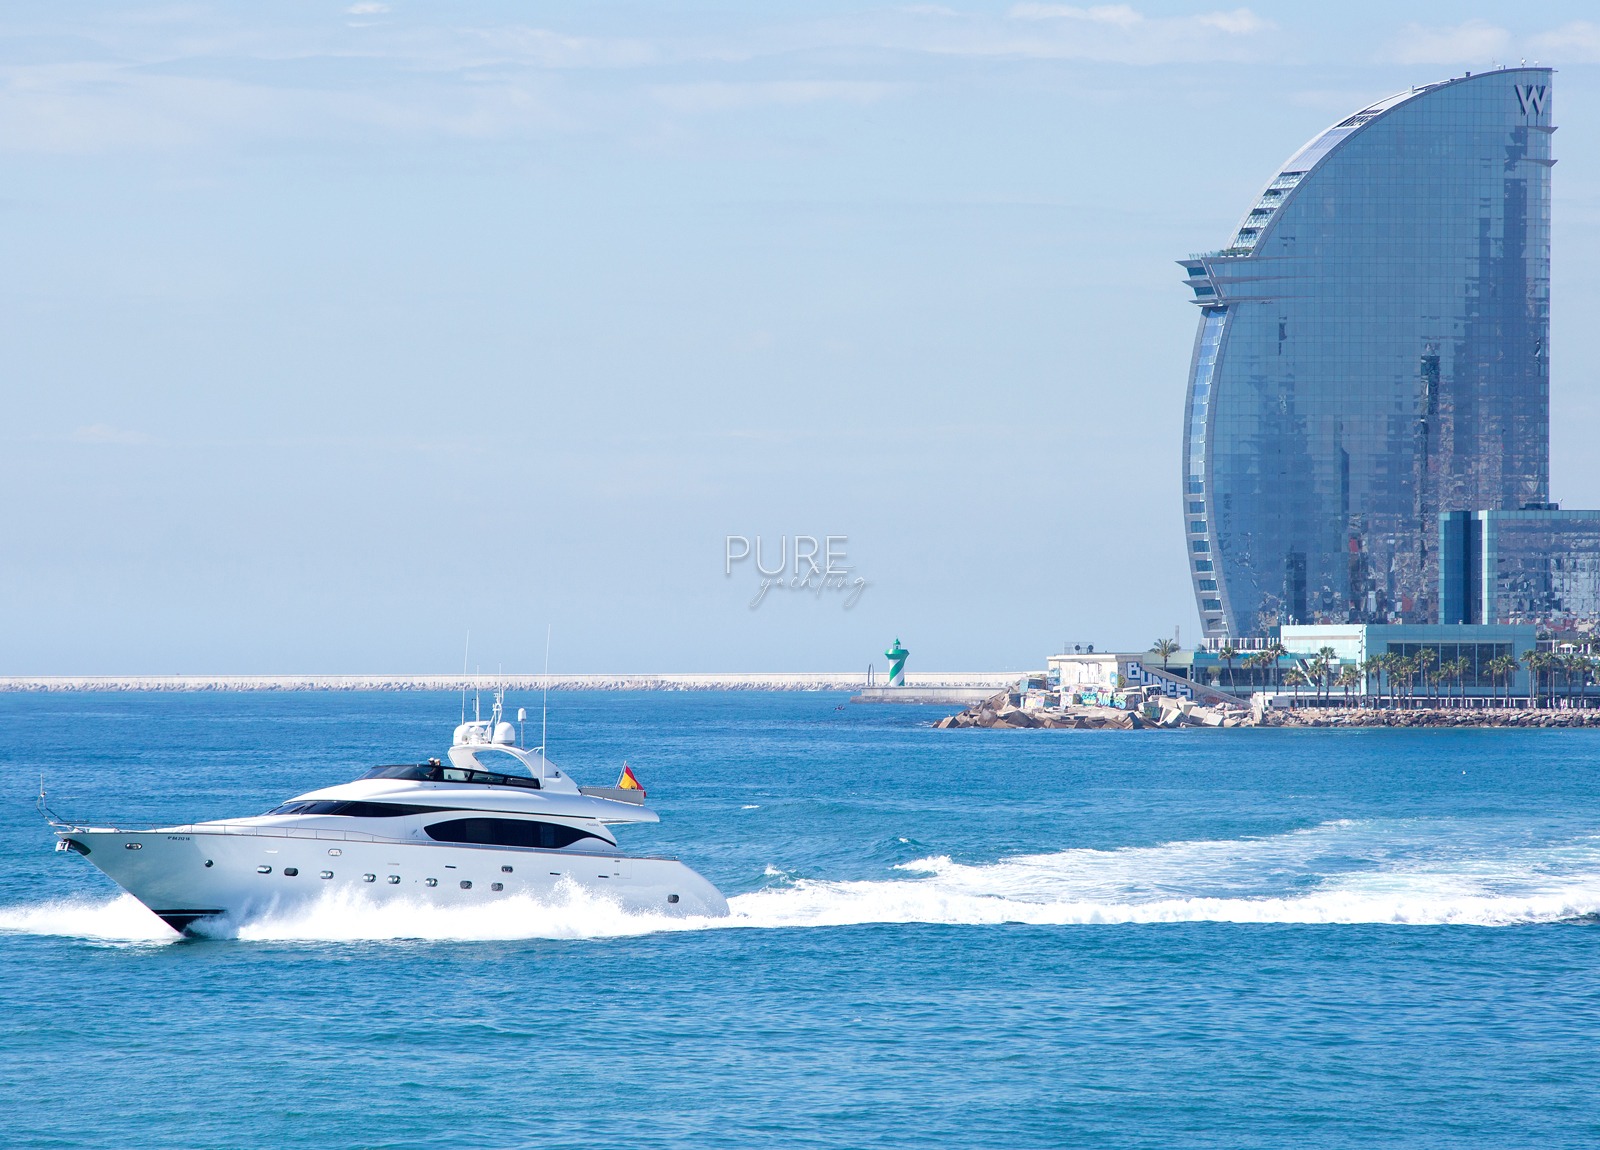 luxury yacht maiora 28m sublime mar spain